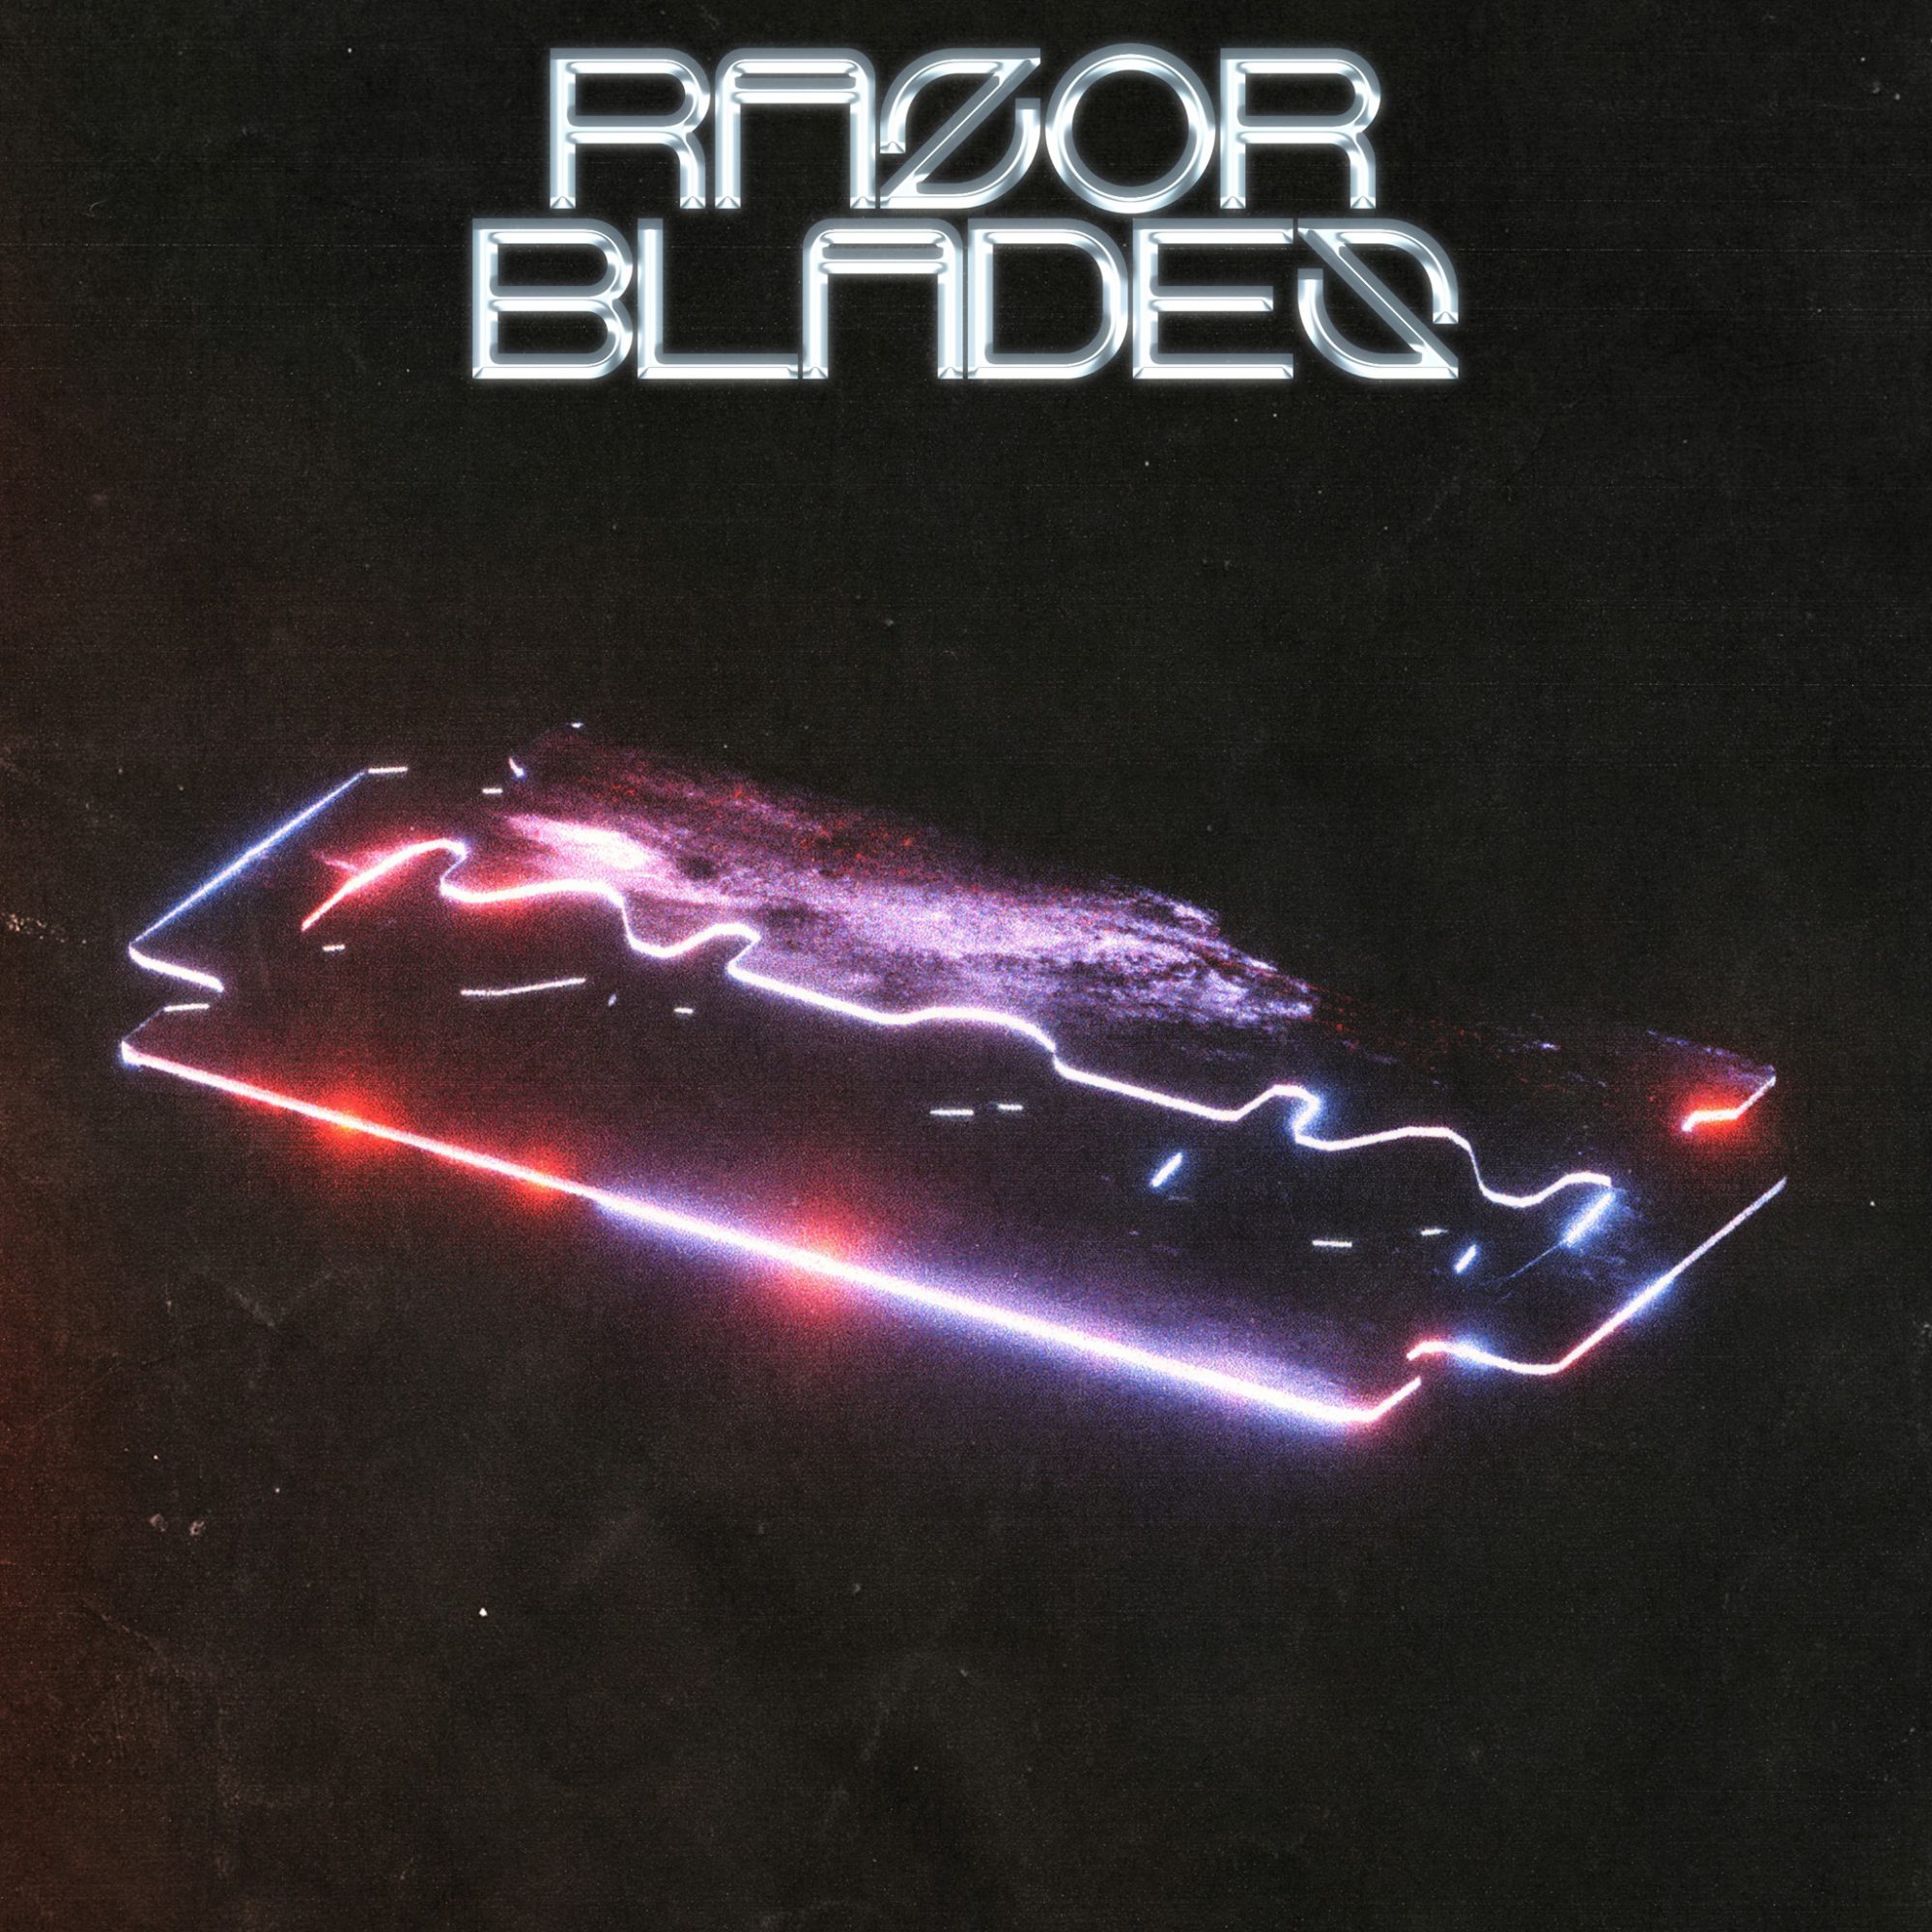 Tisoki Razor Blades EP